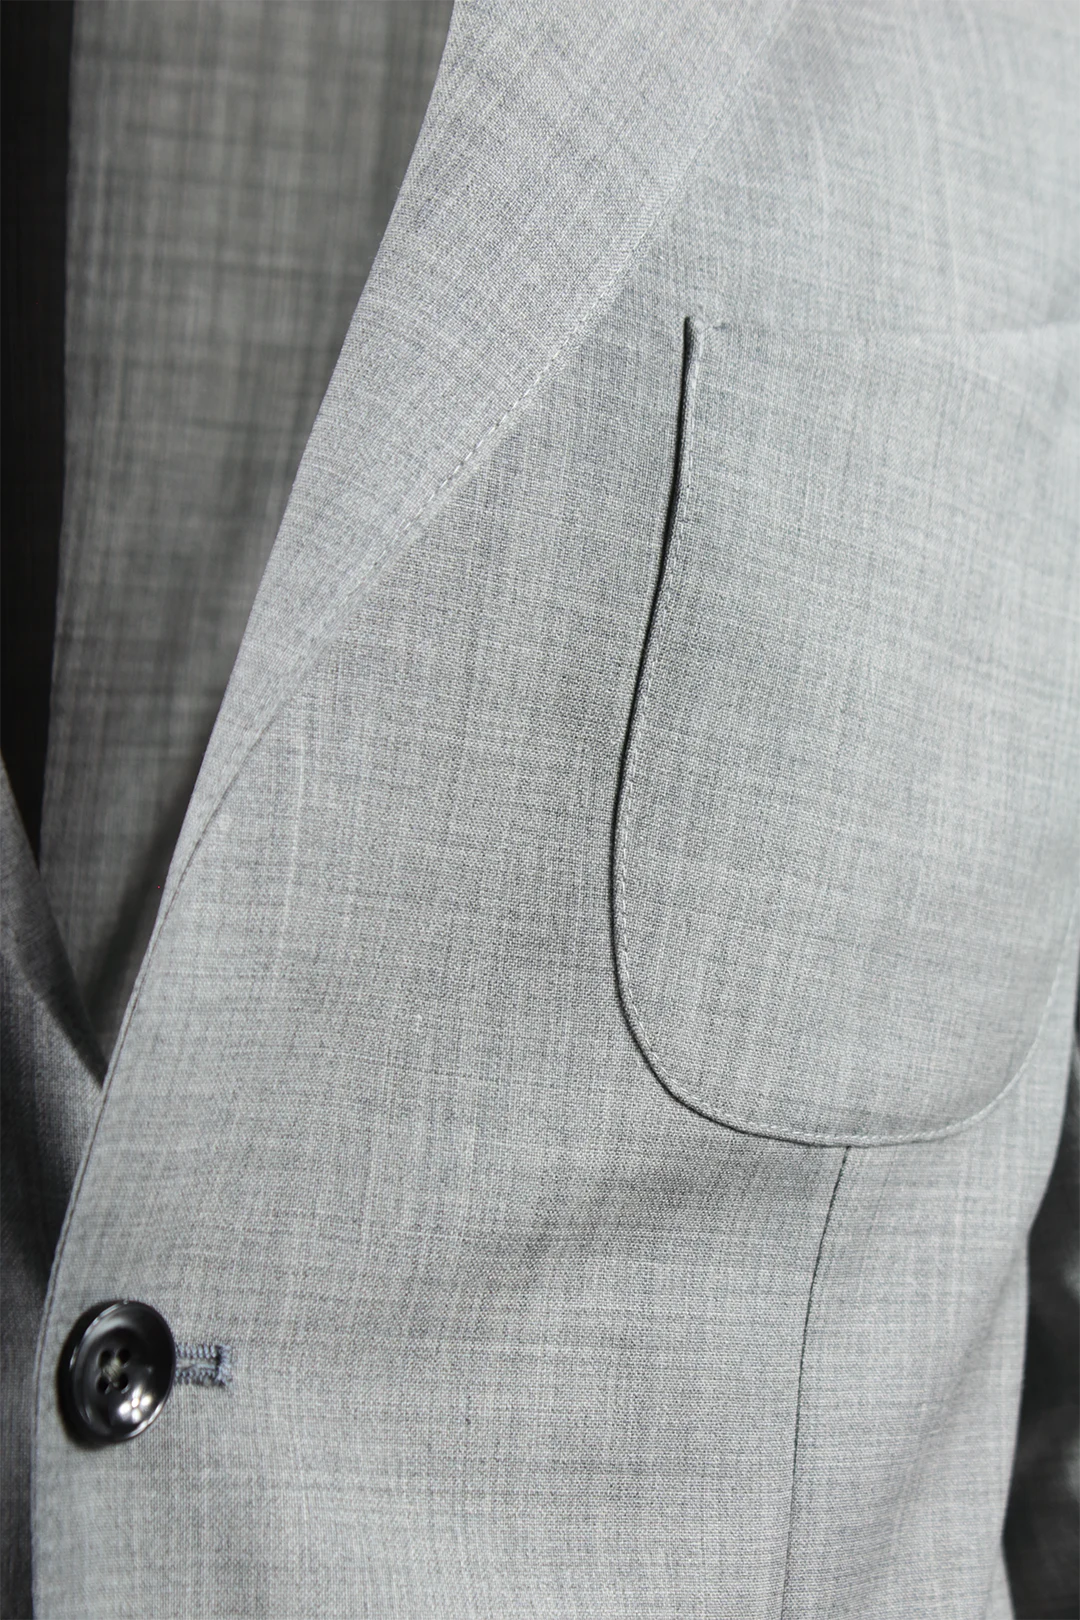 Giacca sfoderata in tela di lana grigio chiaro tasca